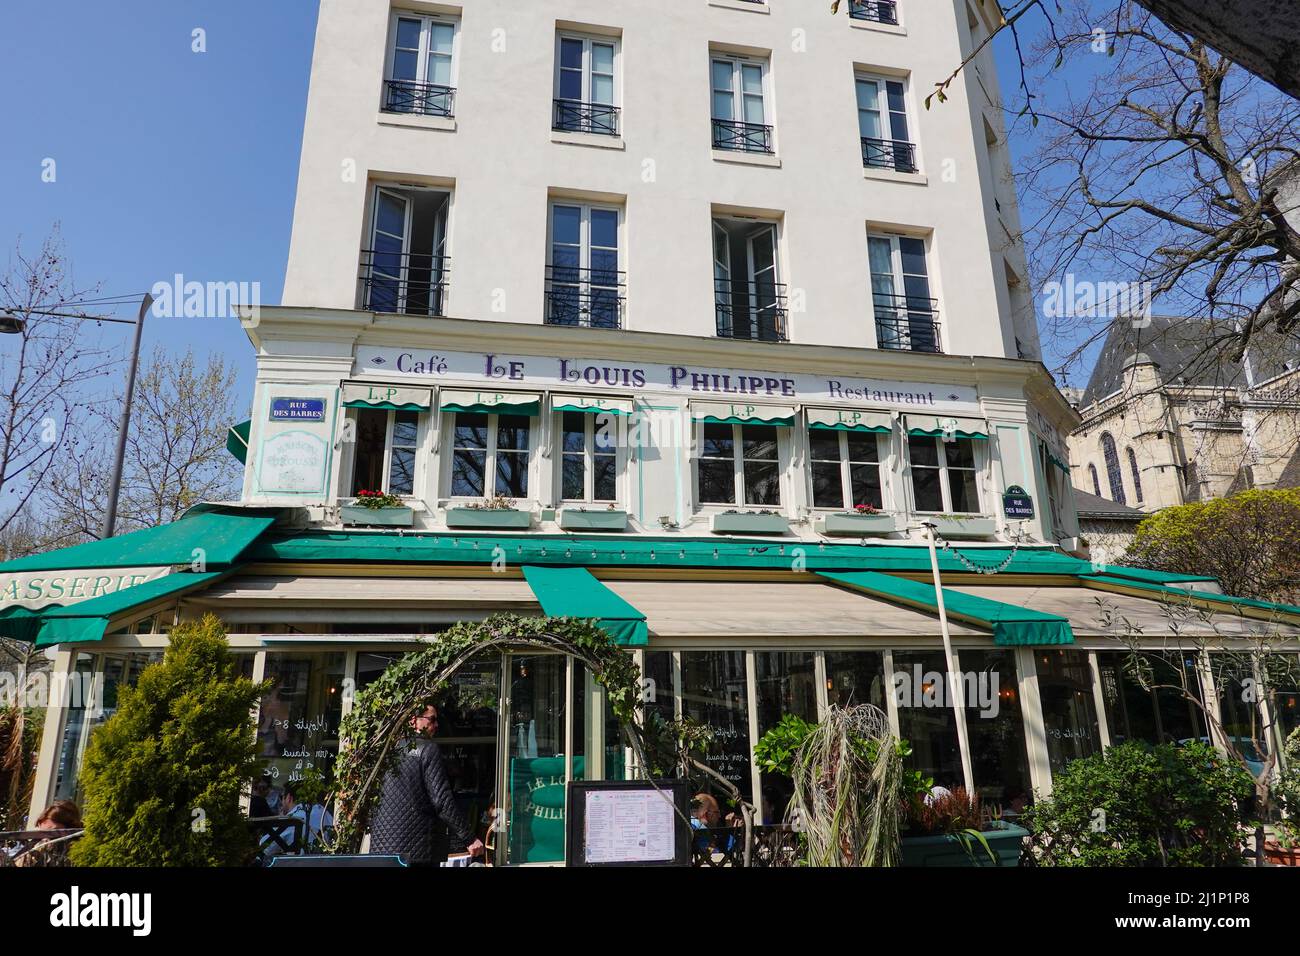 Café Le Louis Philippe in the 4th Arrondissement, Paris, France. Stock Photo